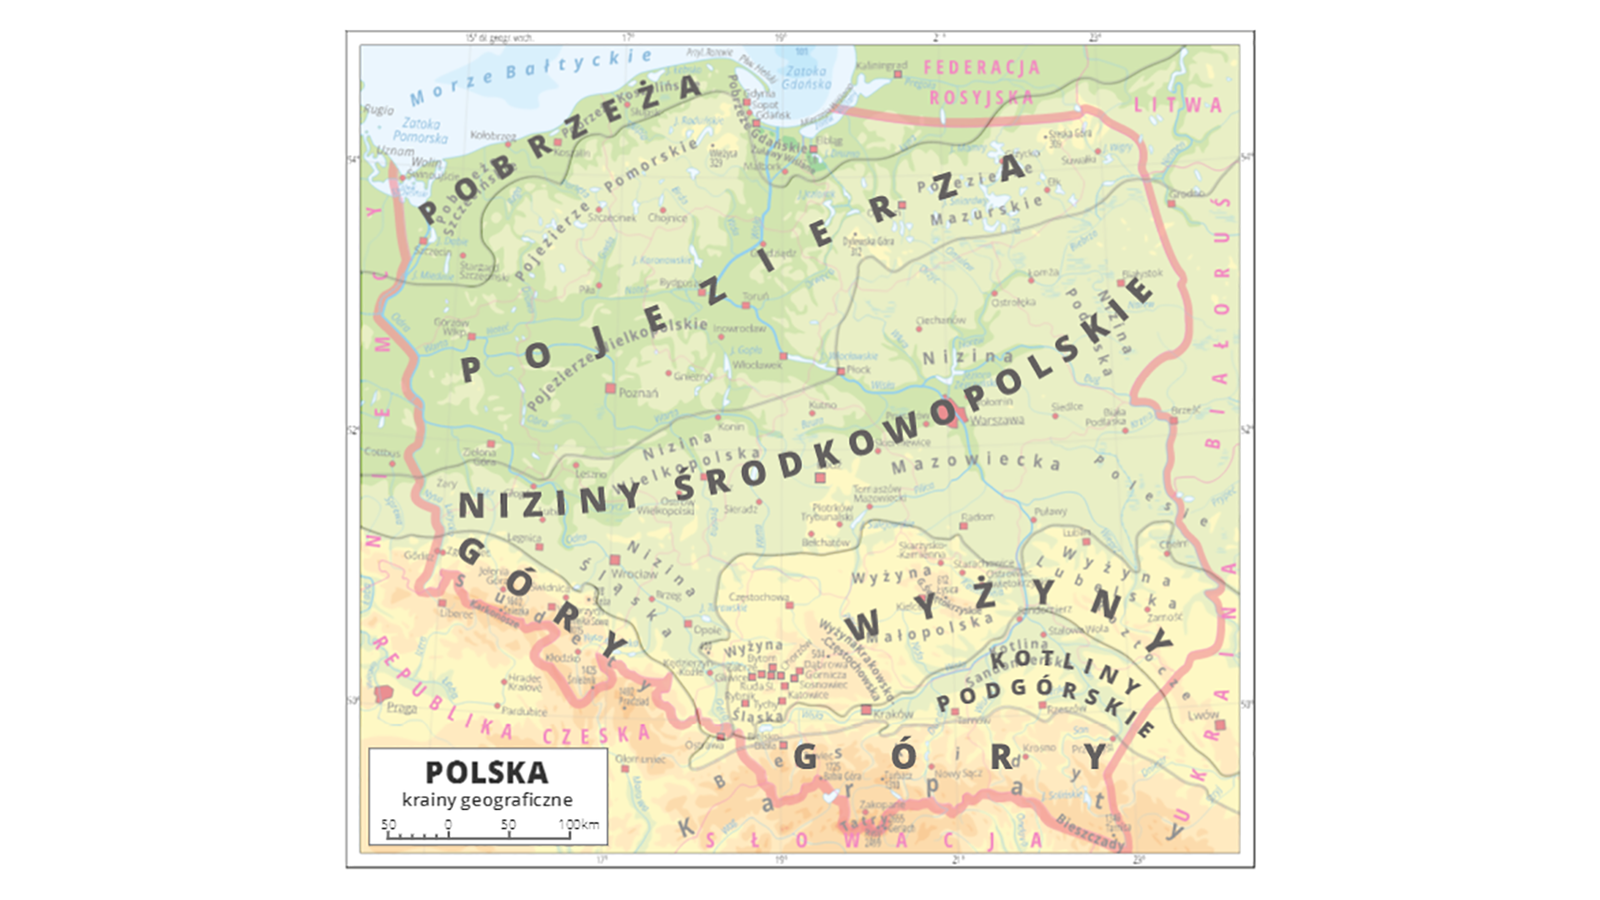 Aktywna mapa Polski z zaznaczonymi pasami poszczególnych krajobrazów Polski. Od północy są to kolejno pasy: pobrzeży, pojezierzy, nizin środkowopolskich, wyżyn, kotlin podgórskich, gór.